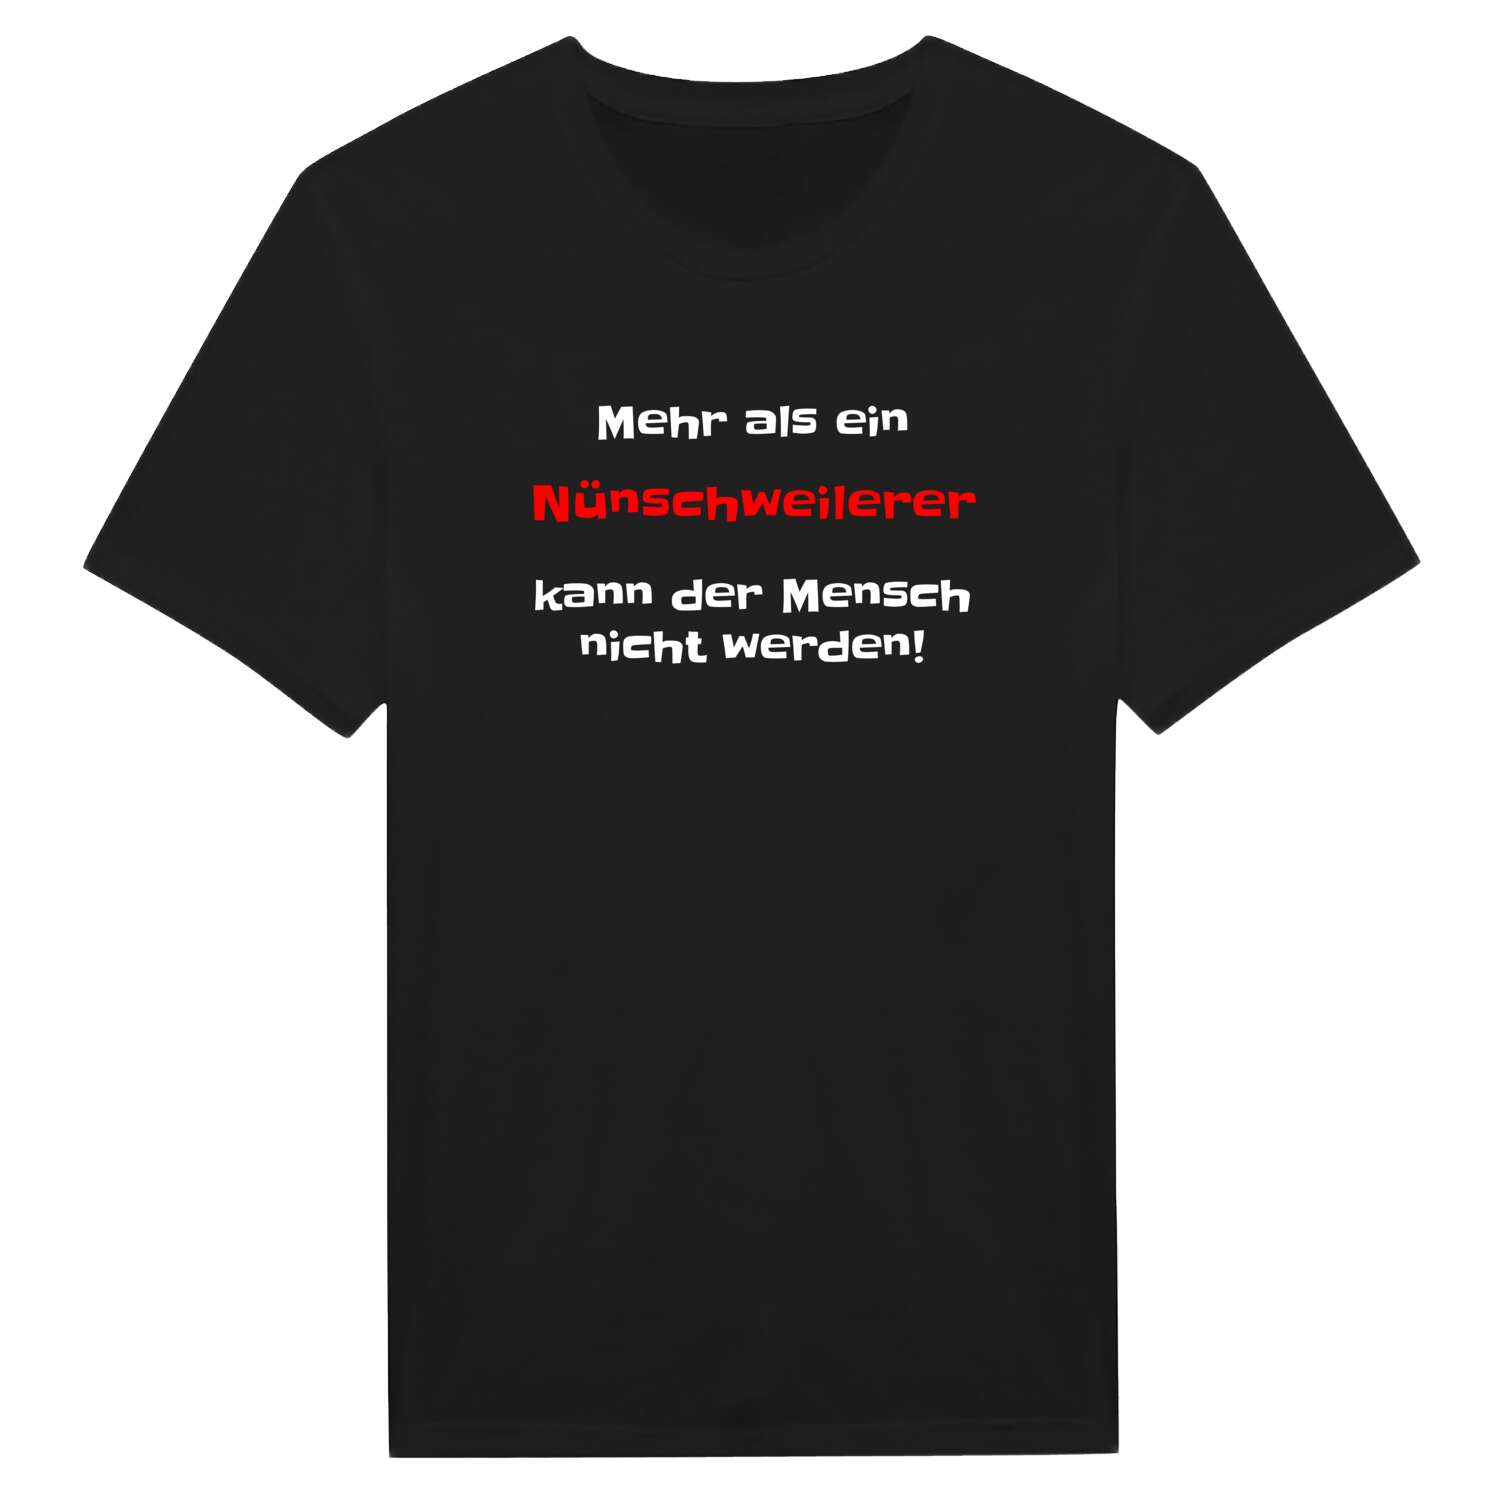 Nünschweiler T-Shirt »Mehr als ein«